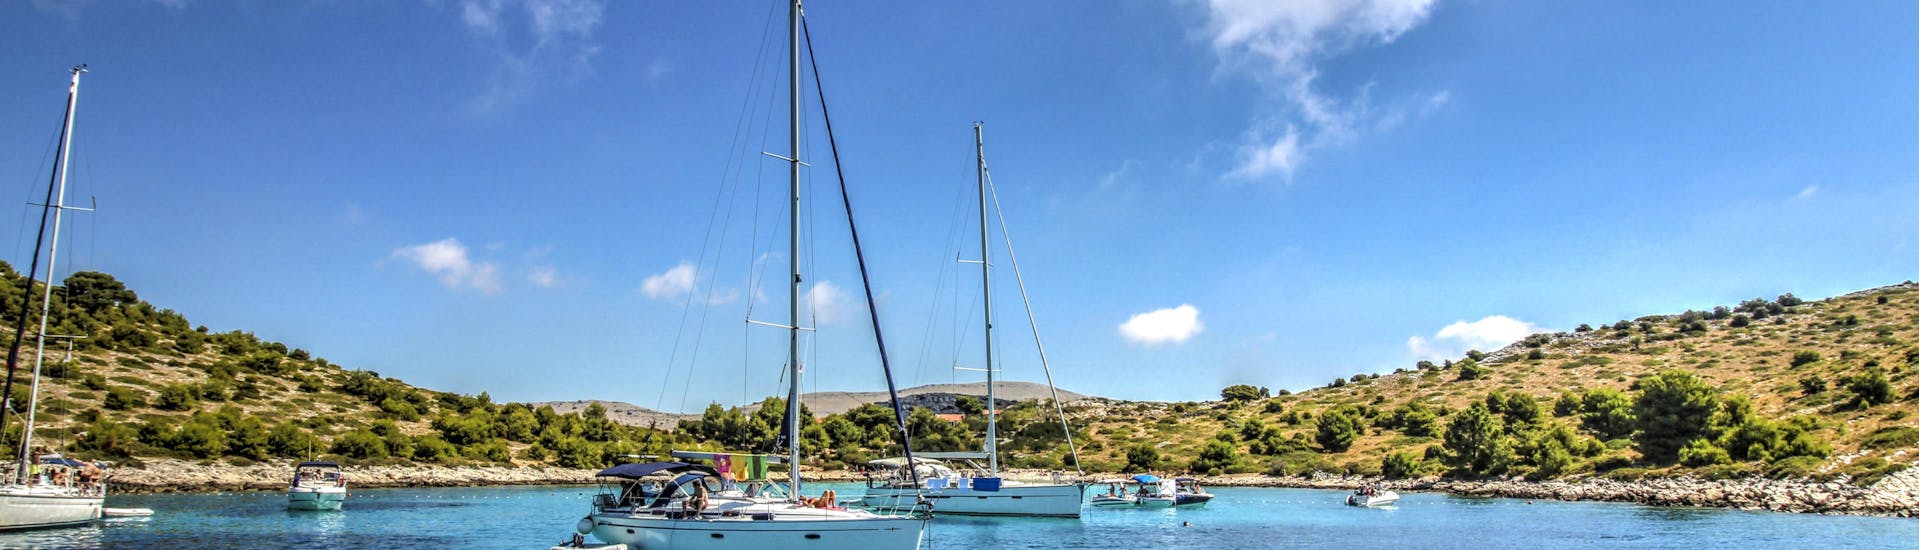 Plusieurs bateaux près de la côte lors d'une balade en bateau aux îles Kornati.